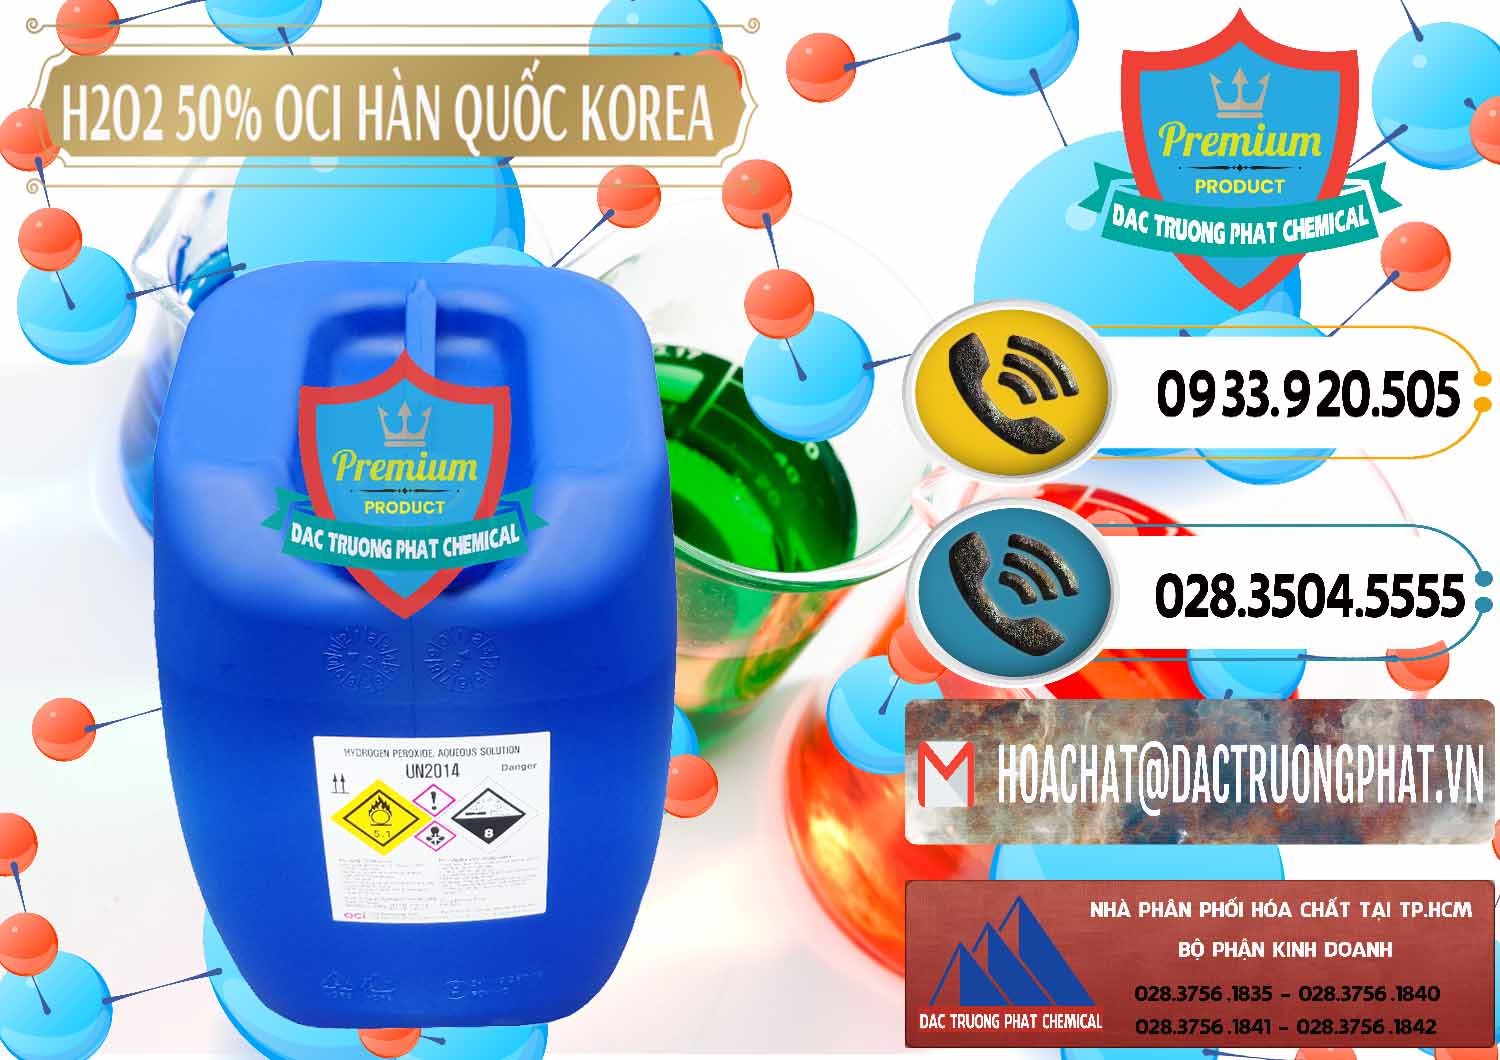 Nơi chuyên phân phối - bán H2O2 - Hydrogen Peroxide 50% OCI Hàn Quốc Korea - 0075 - Đơn vị bán & phân phối hóa chất tại TP.HCM - hoachatdetnhuom.vn